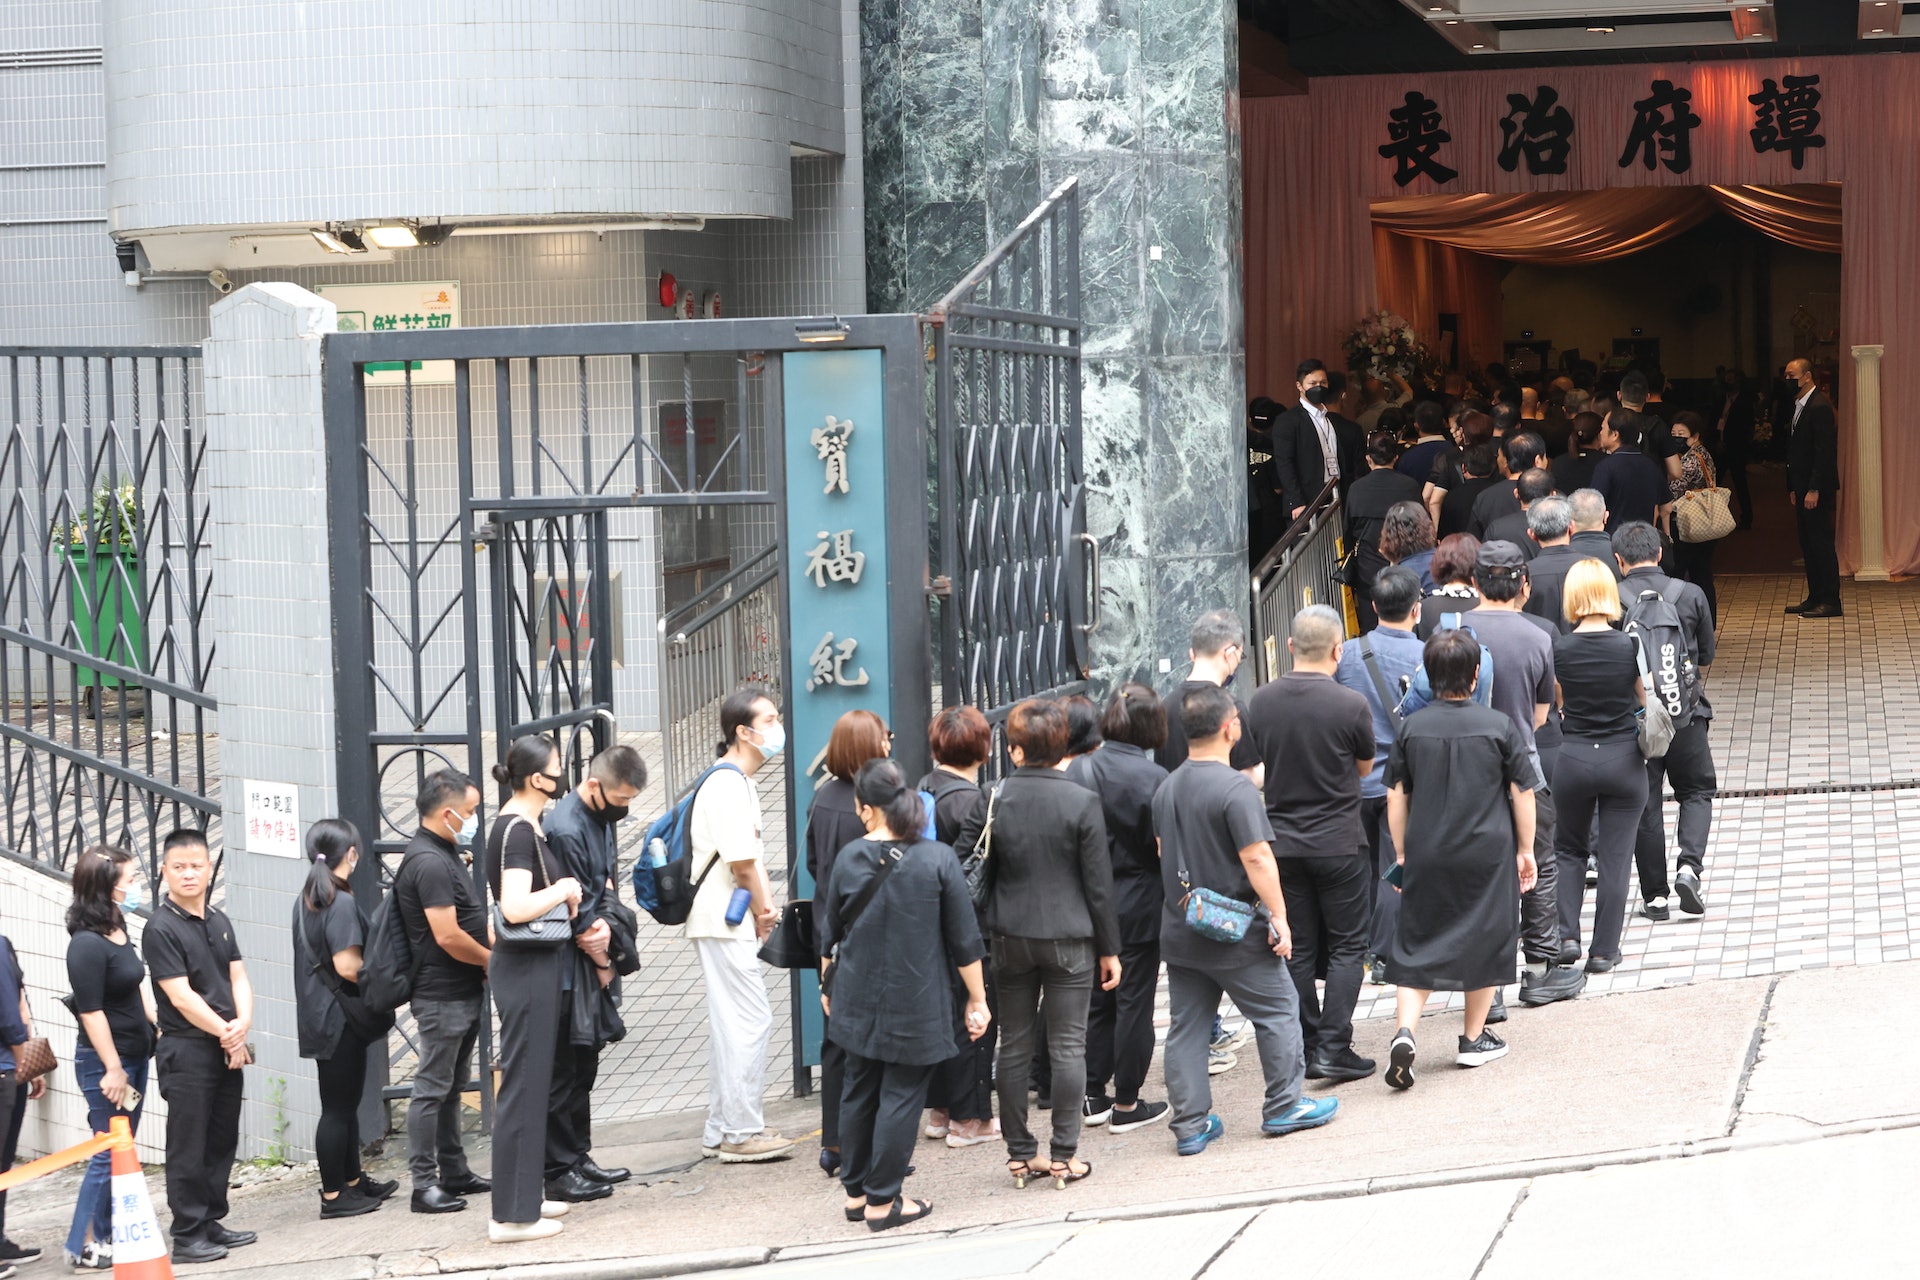 Đám đông xếp hàng dài đến viếng nữ người mẫu Hồng Kông bị giết hại, phân xác - Ảnh 8.